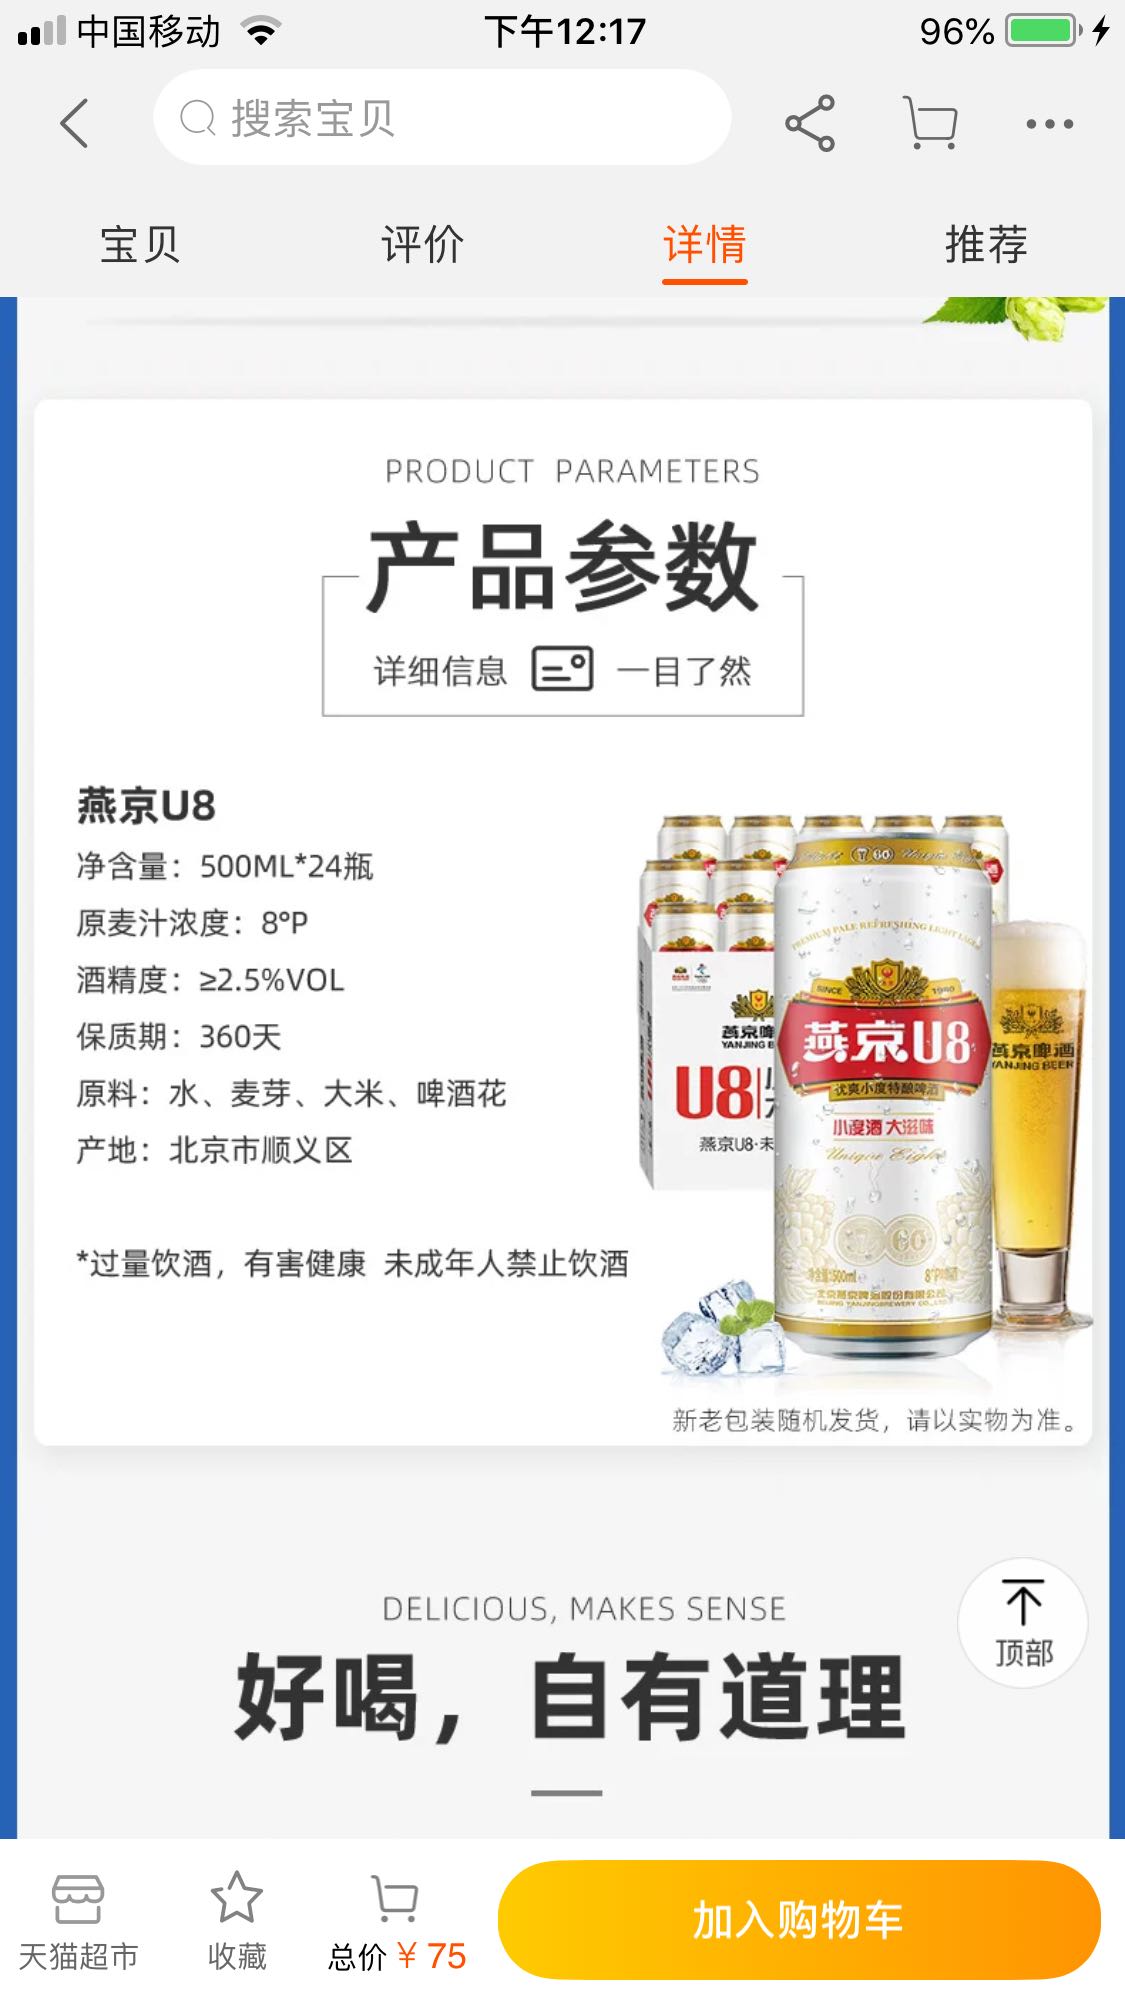 燕京啤酒配料表图片